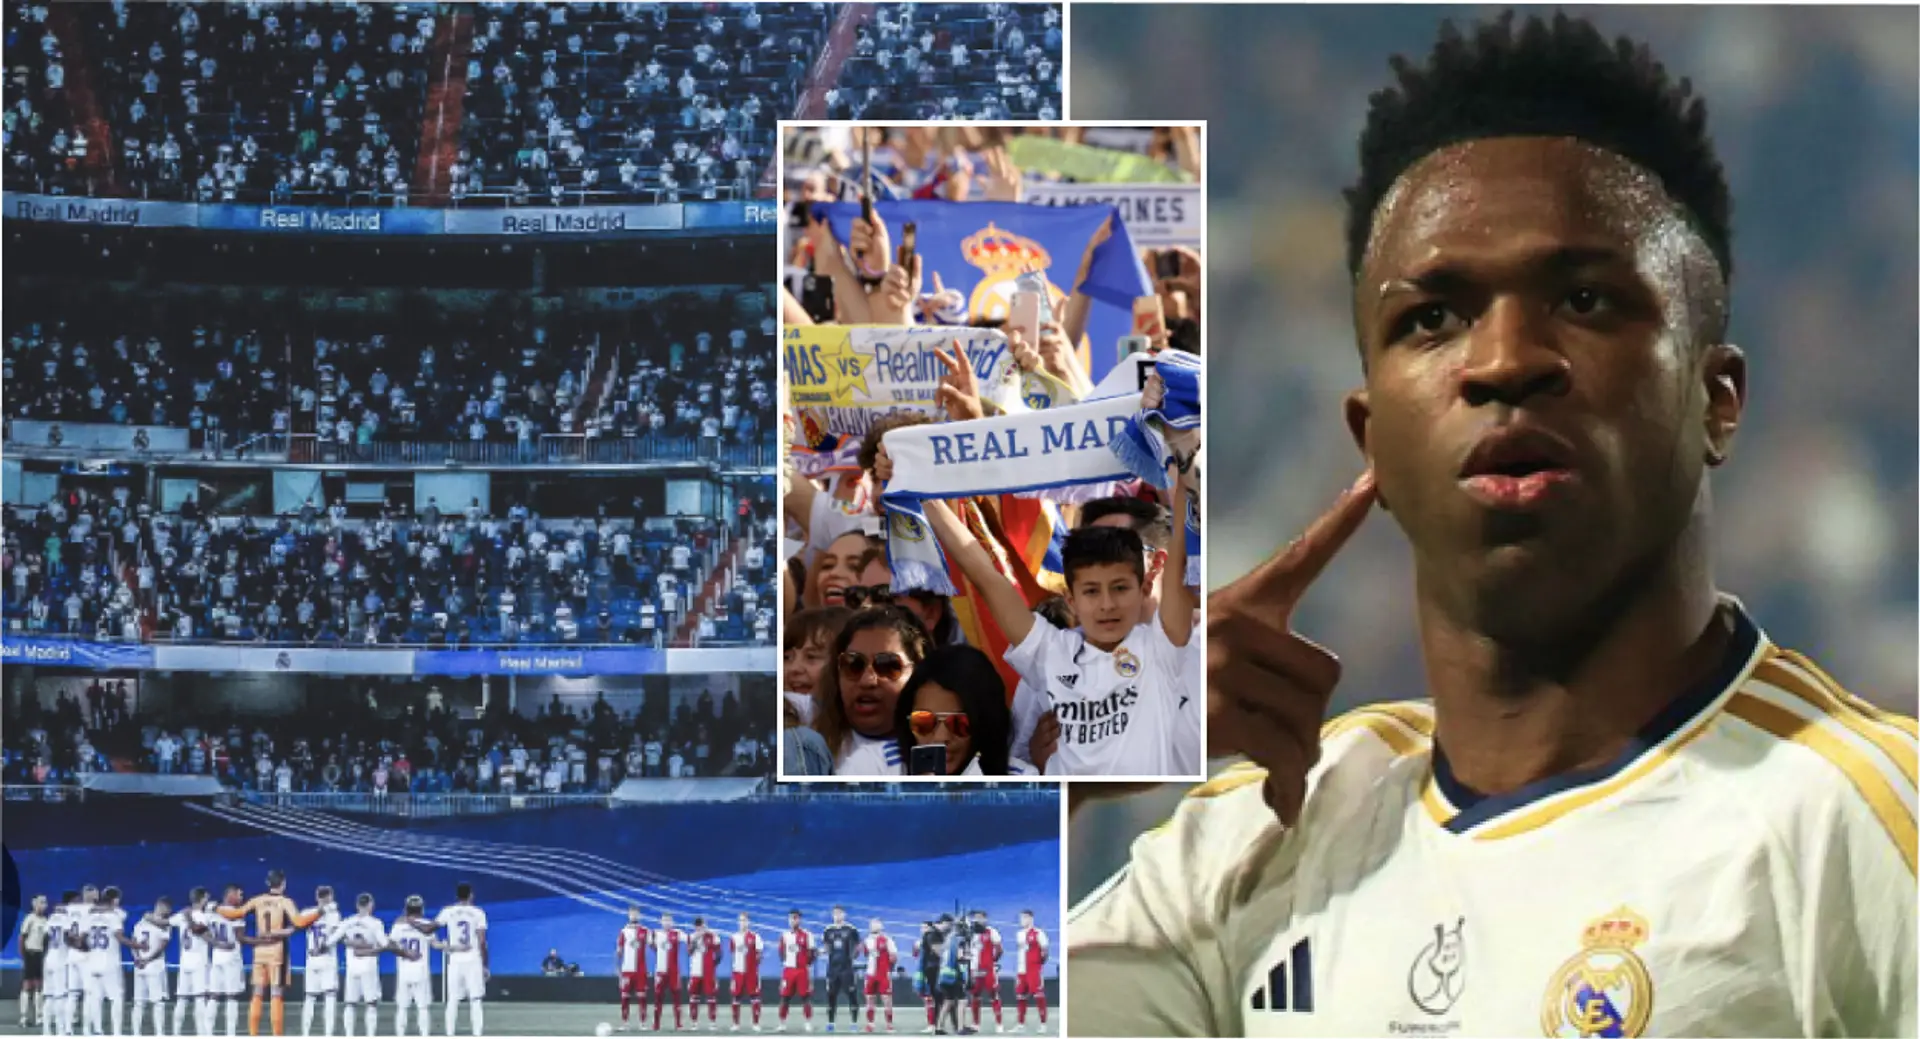 Vinicius envoie un message fort aux fans du Real Madrid avant le choc contre Man City